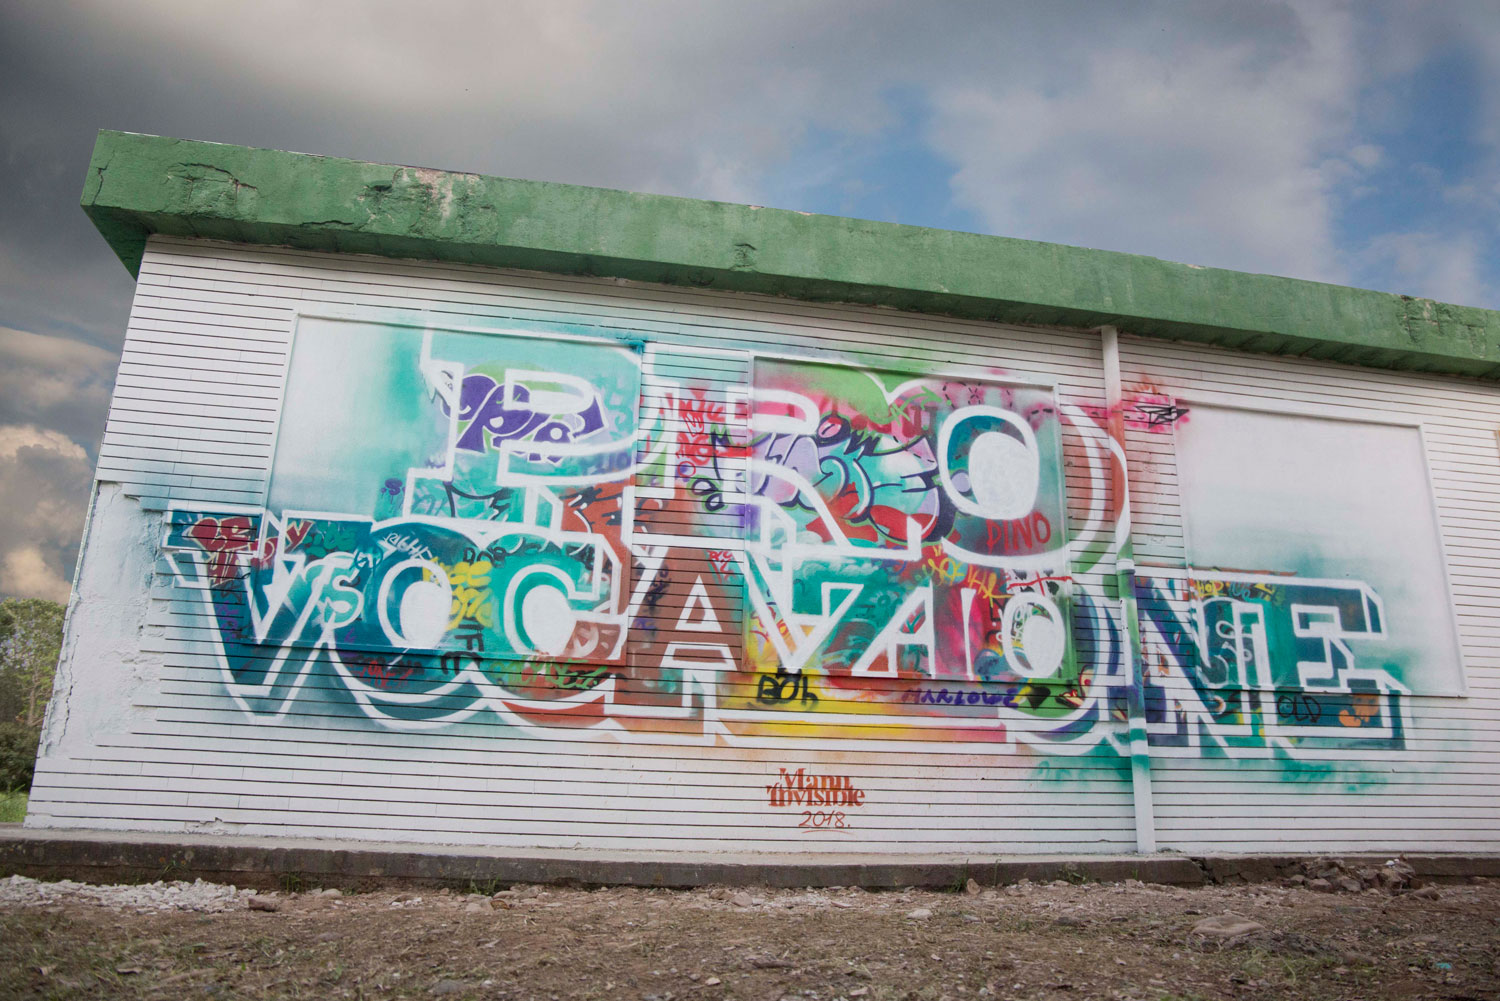 ''Pro Vocazione'' Spray et peinture au quartz sur le mur 4 x 8 m Villacidro 2018